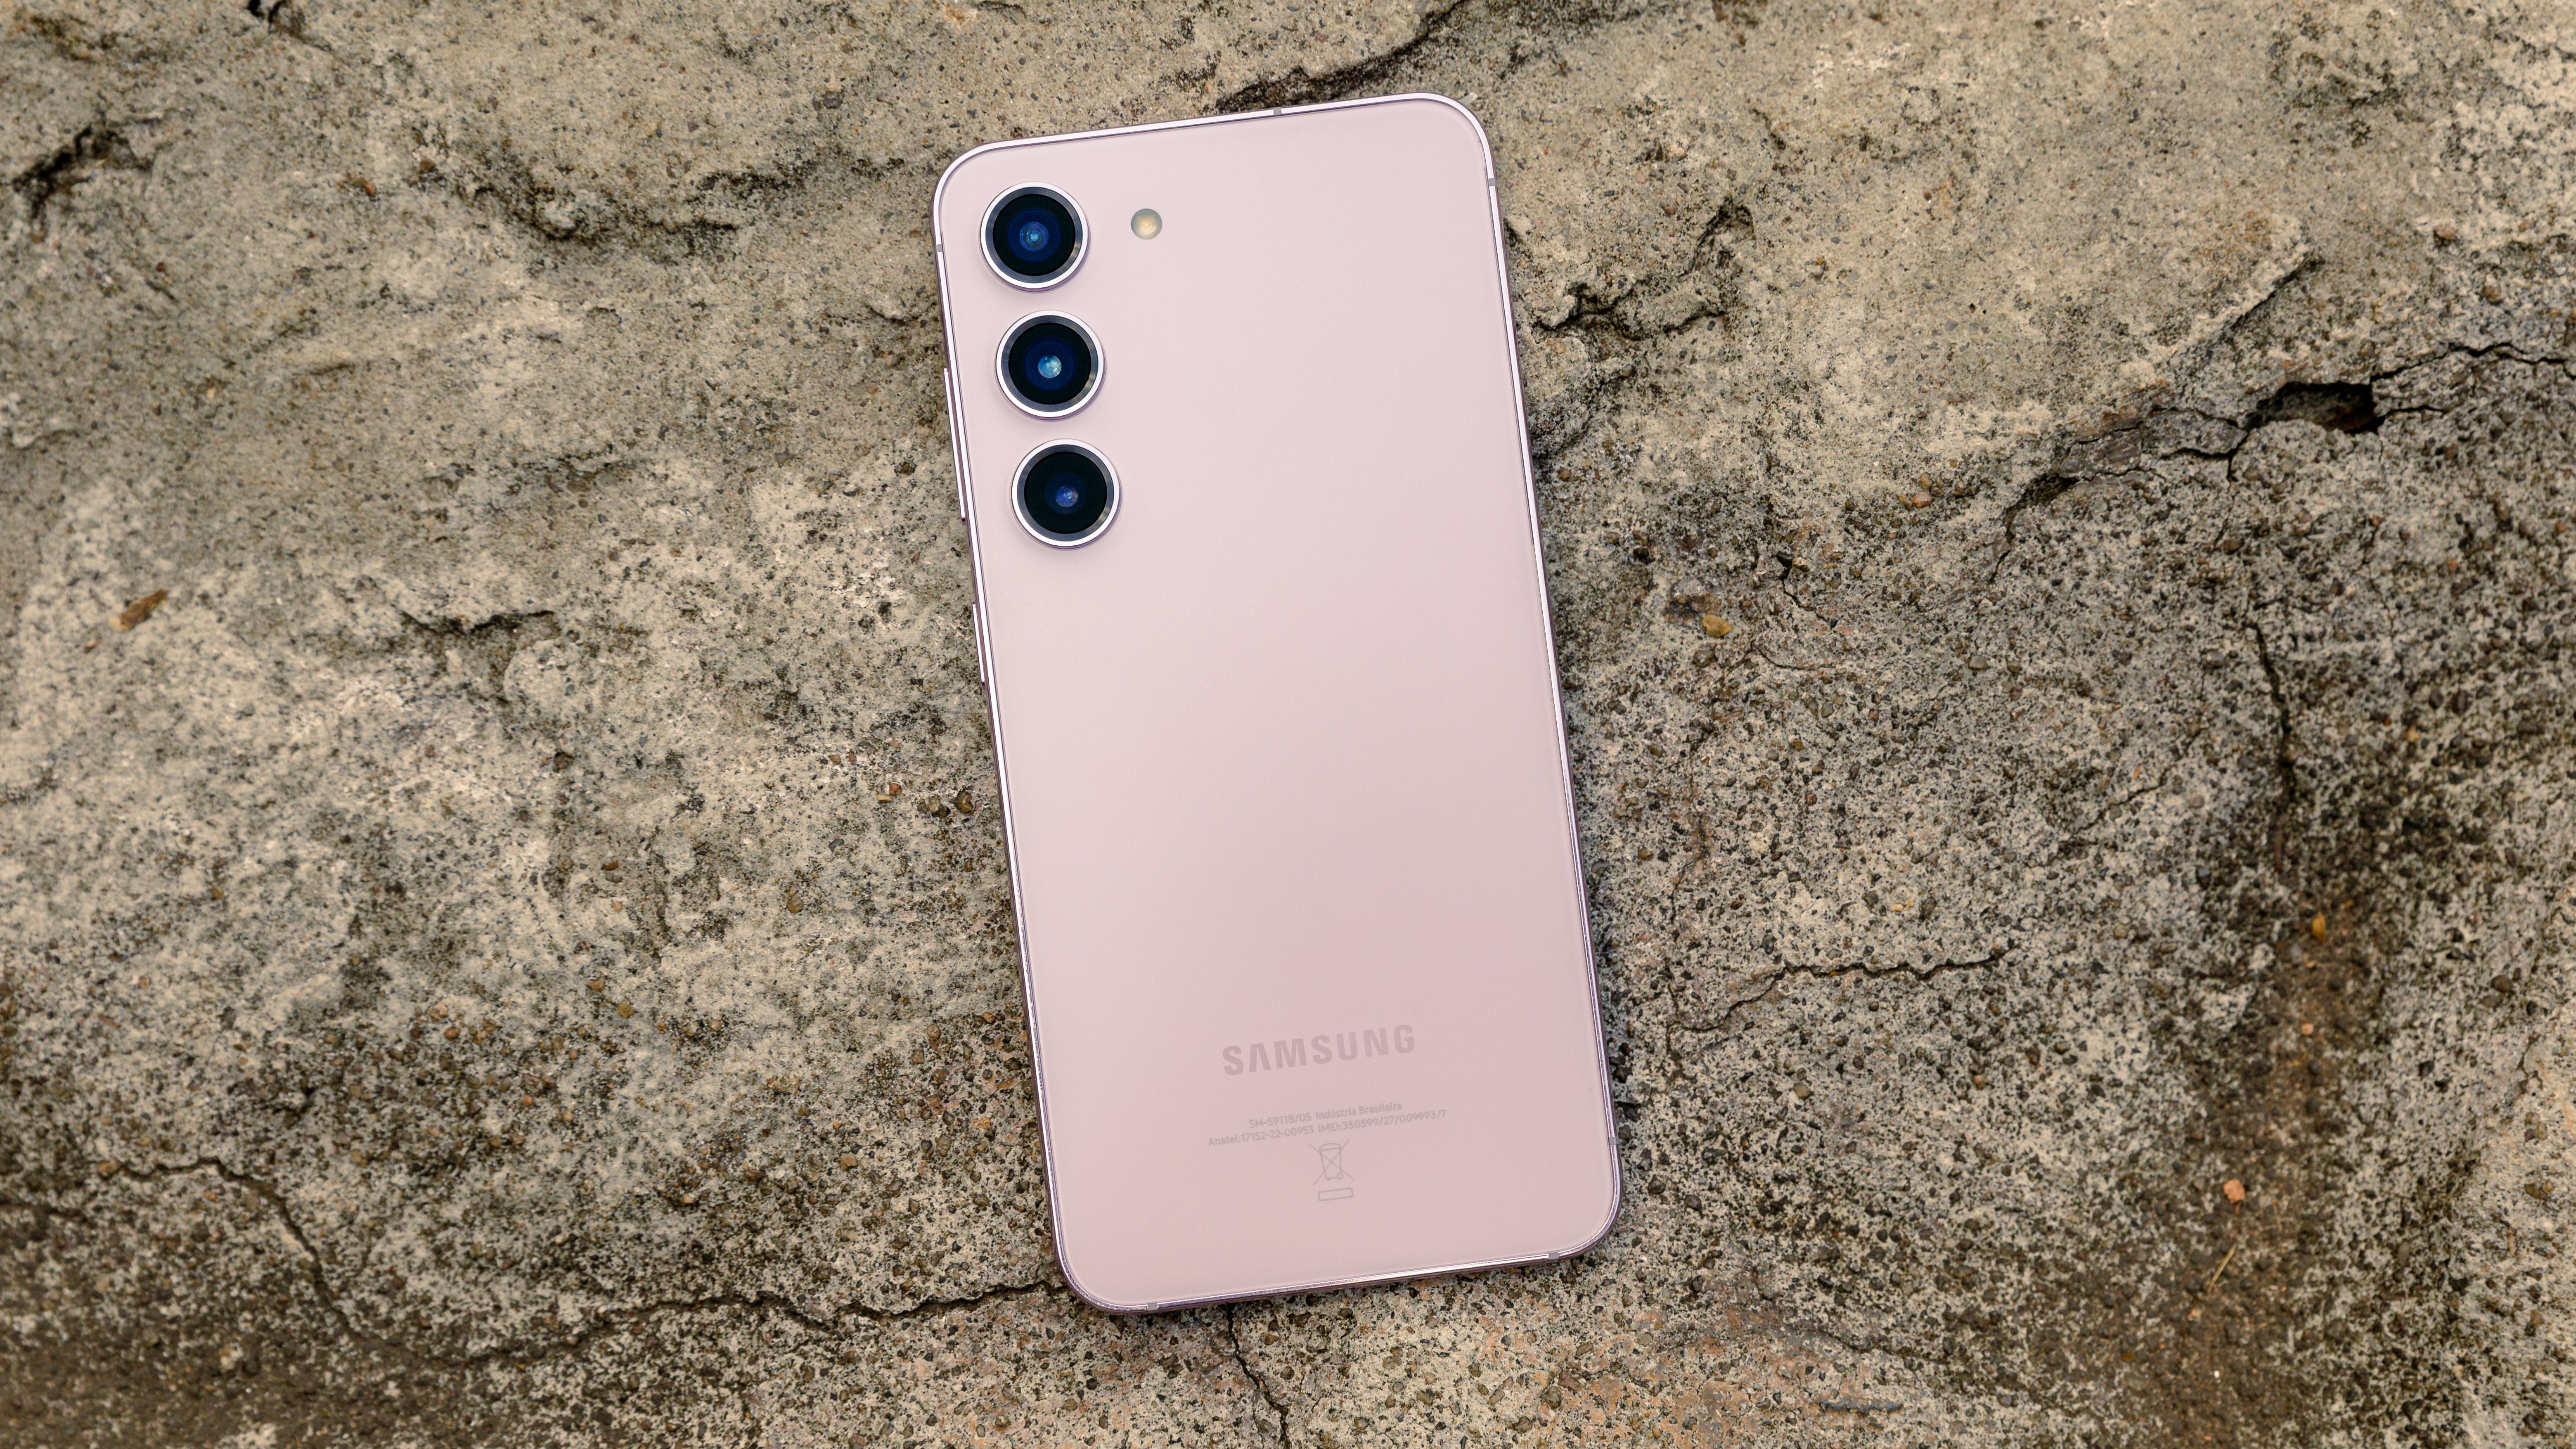 Samsung revela a nova linha Samsung Galaxy S23; saiba tudo sobre